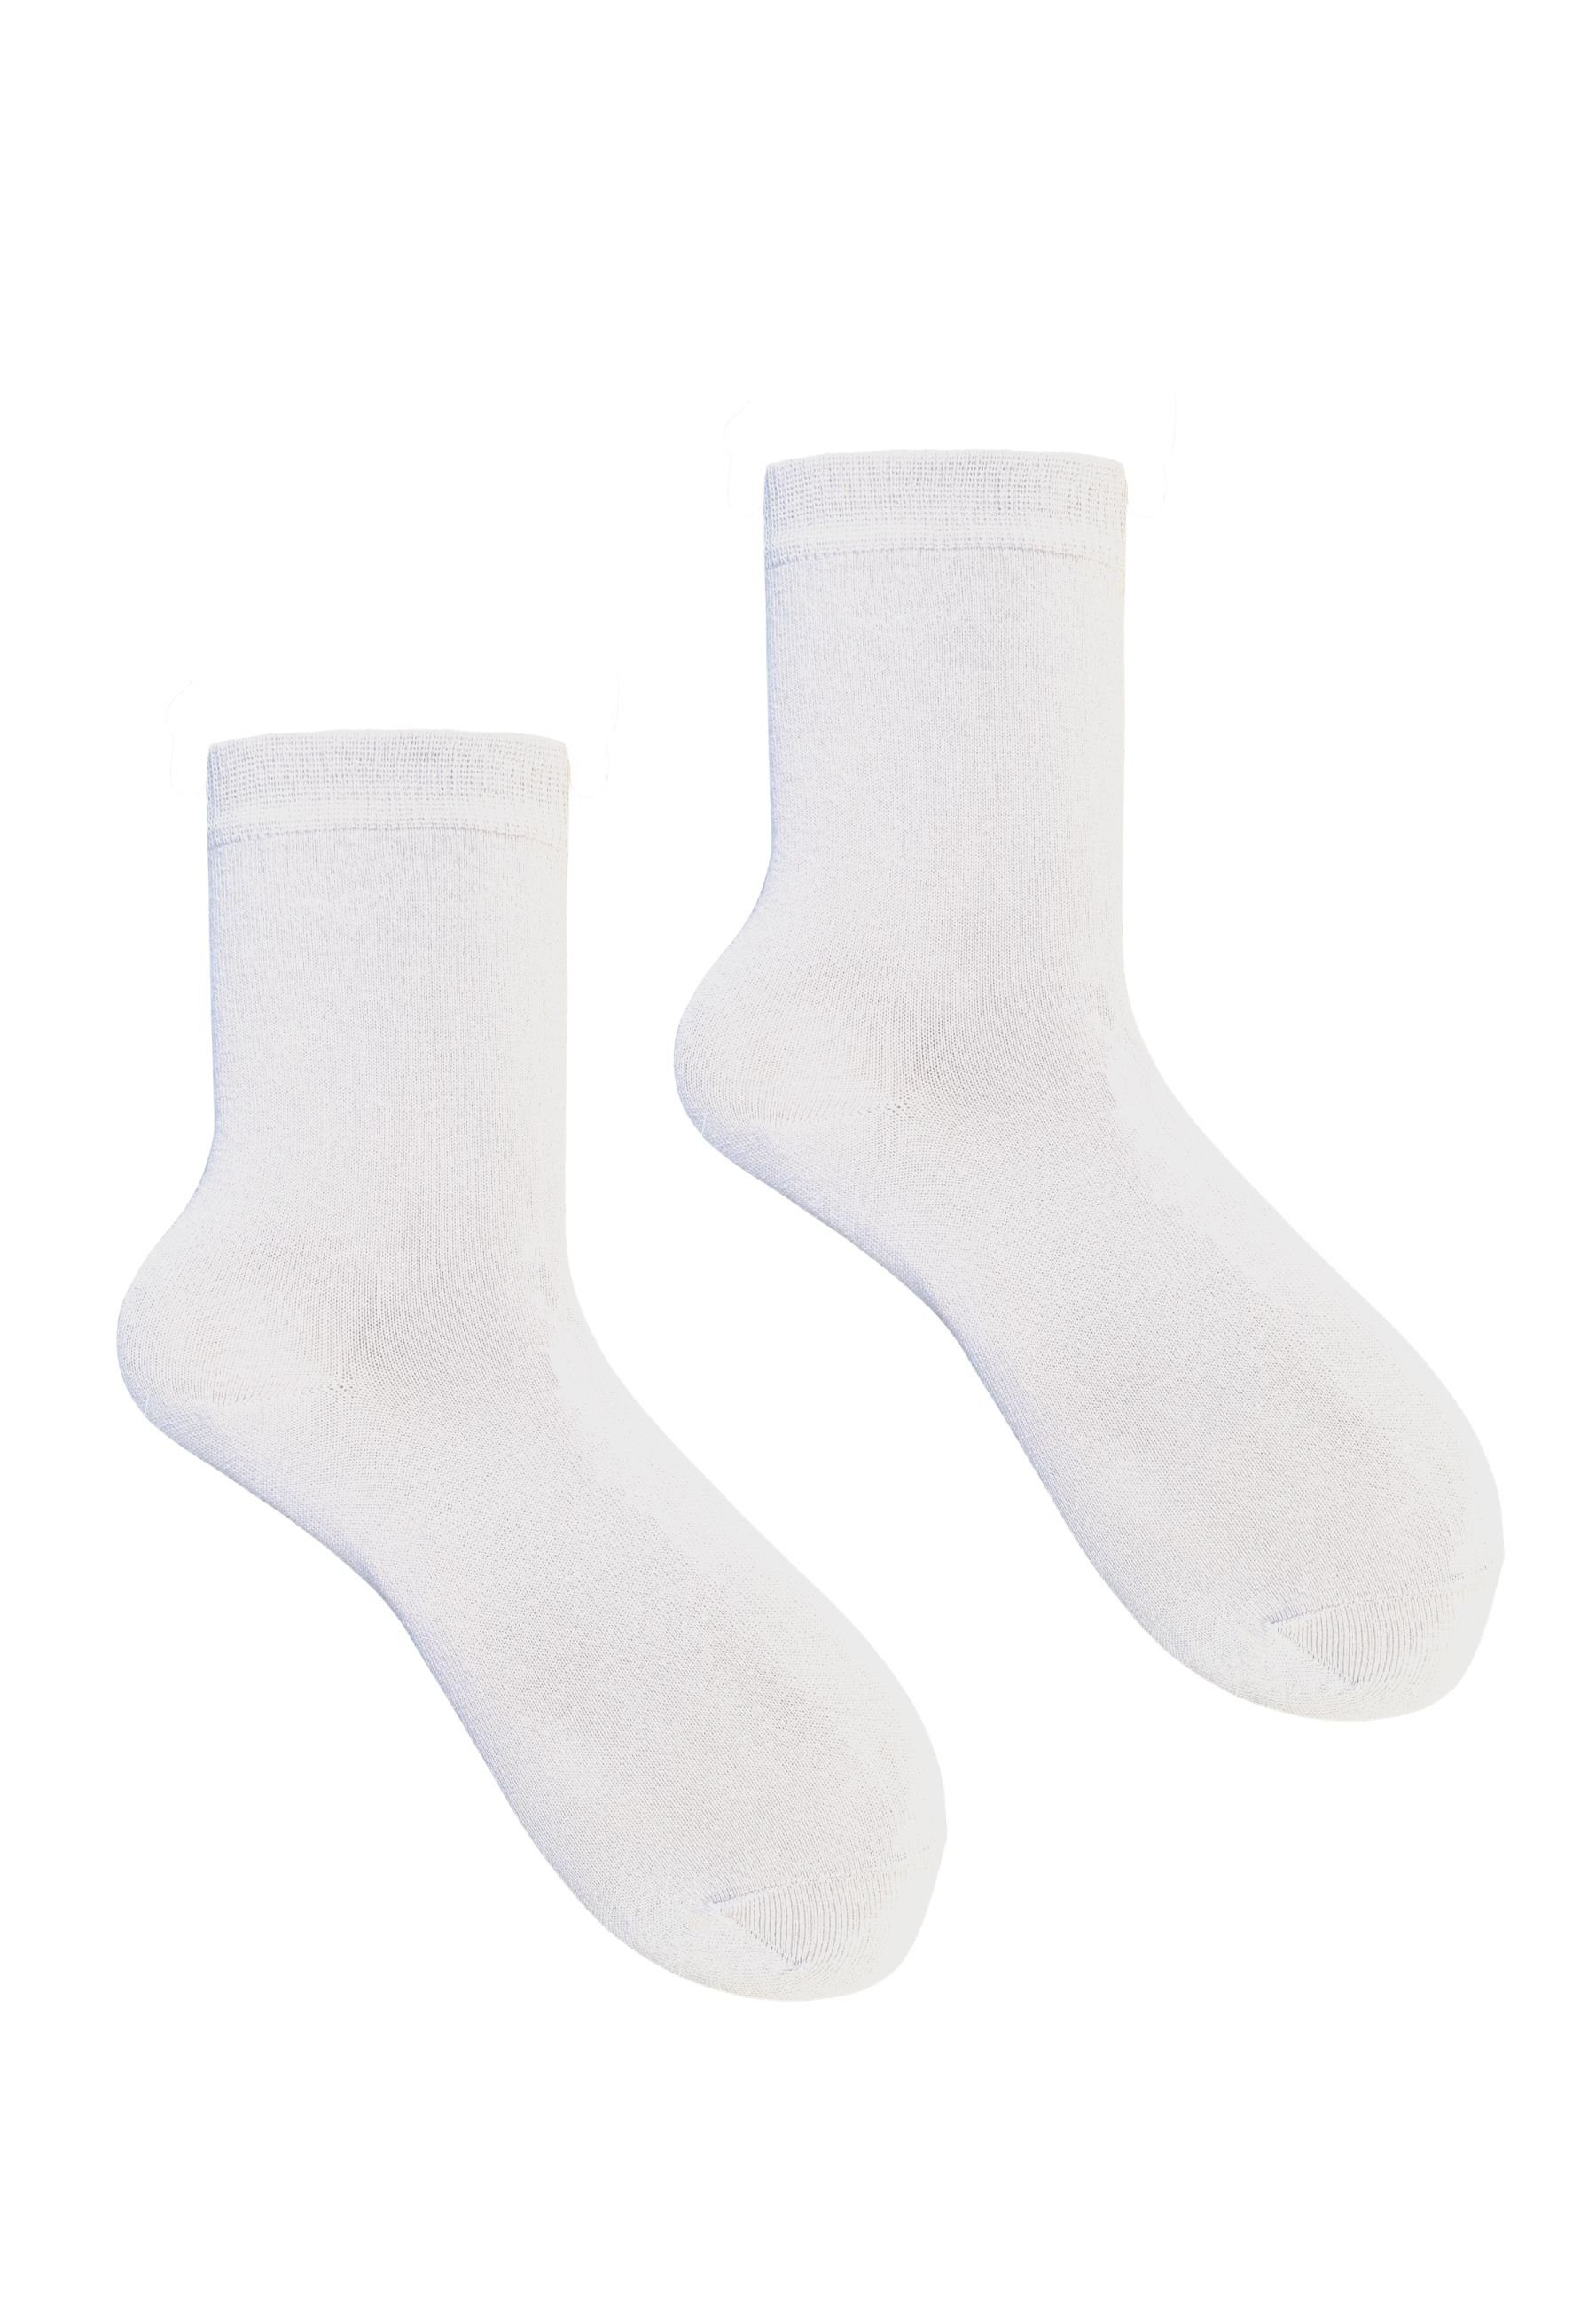 HESE SOX Basicsocken Socken 5 Weiß NO.12 BAUMWOLLE SOCKEN PAAR